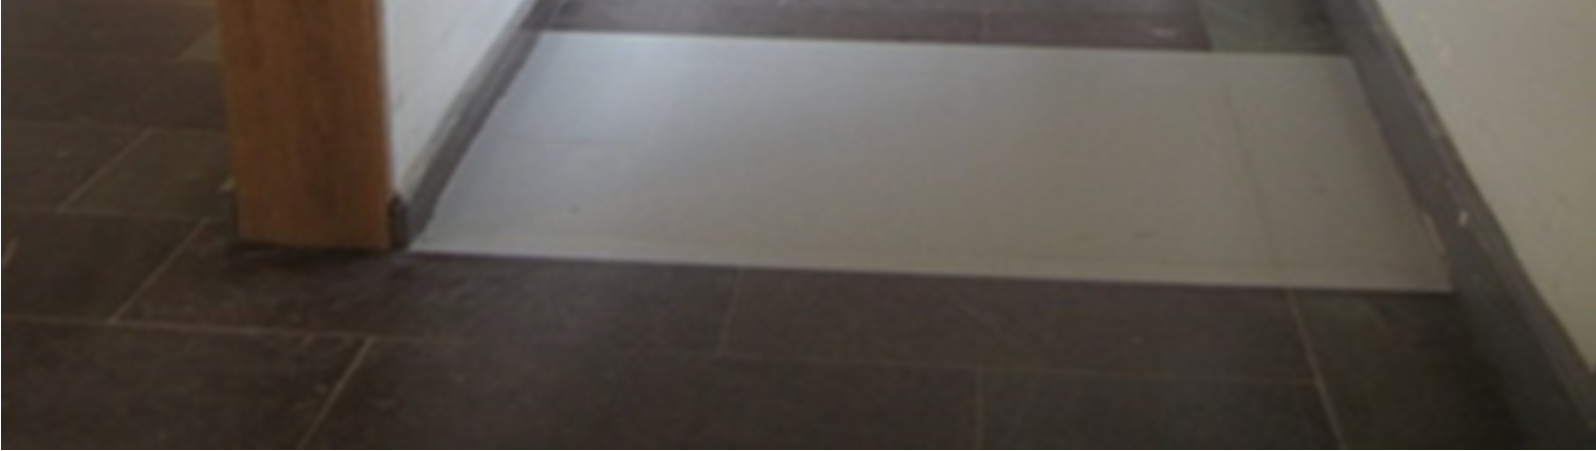 augusti Kungsholmens gymnasium, kontrasterande steg i avvikande sten. Bästa lösning, slits ej. Norra Real. Kontrasterande steg målade, utslitna. Har kompletterats med inborrade vita marmorcylindrar.